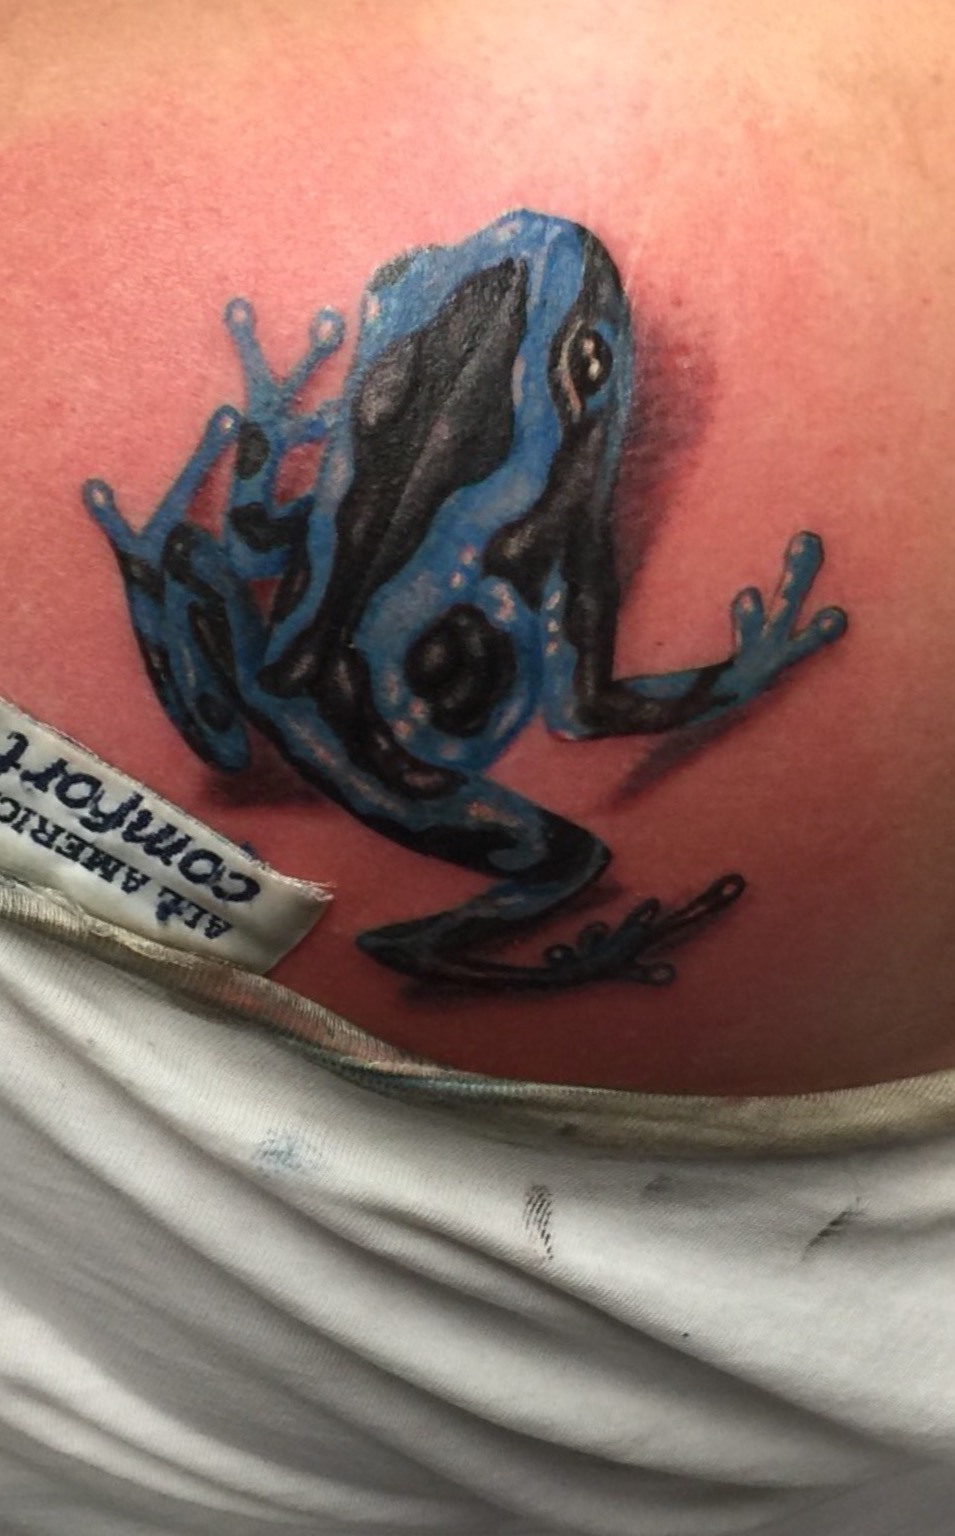 frog tattoo, realistic frog tattoo, Johnny calico, girls with tattoos, Michigan tattooers, tattoo artist Michigan 